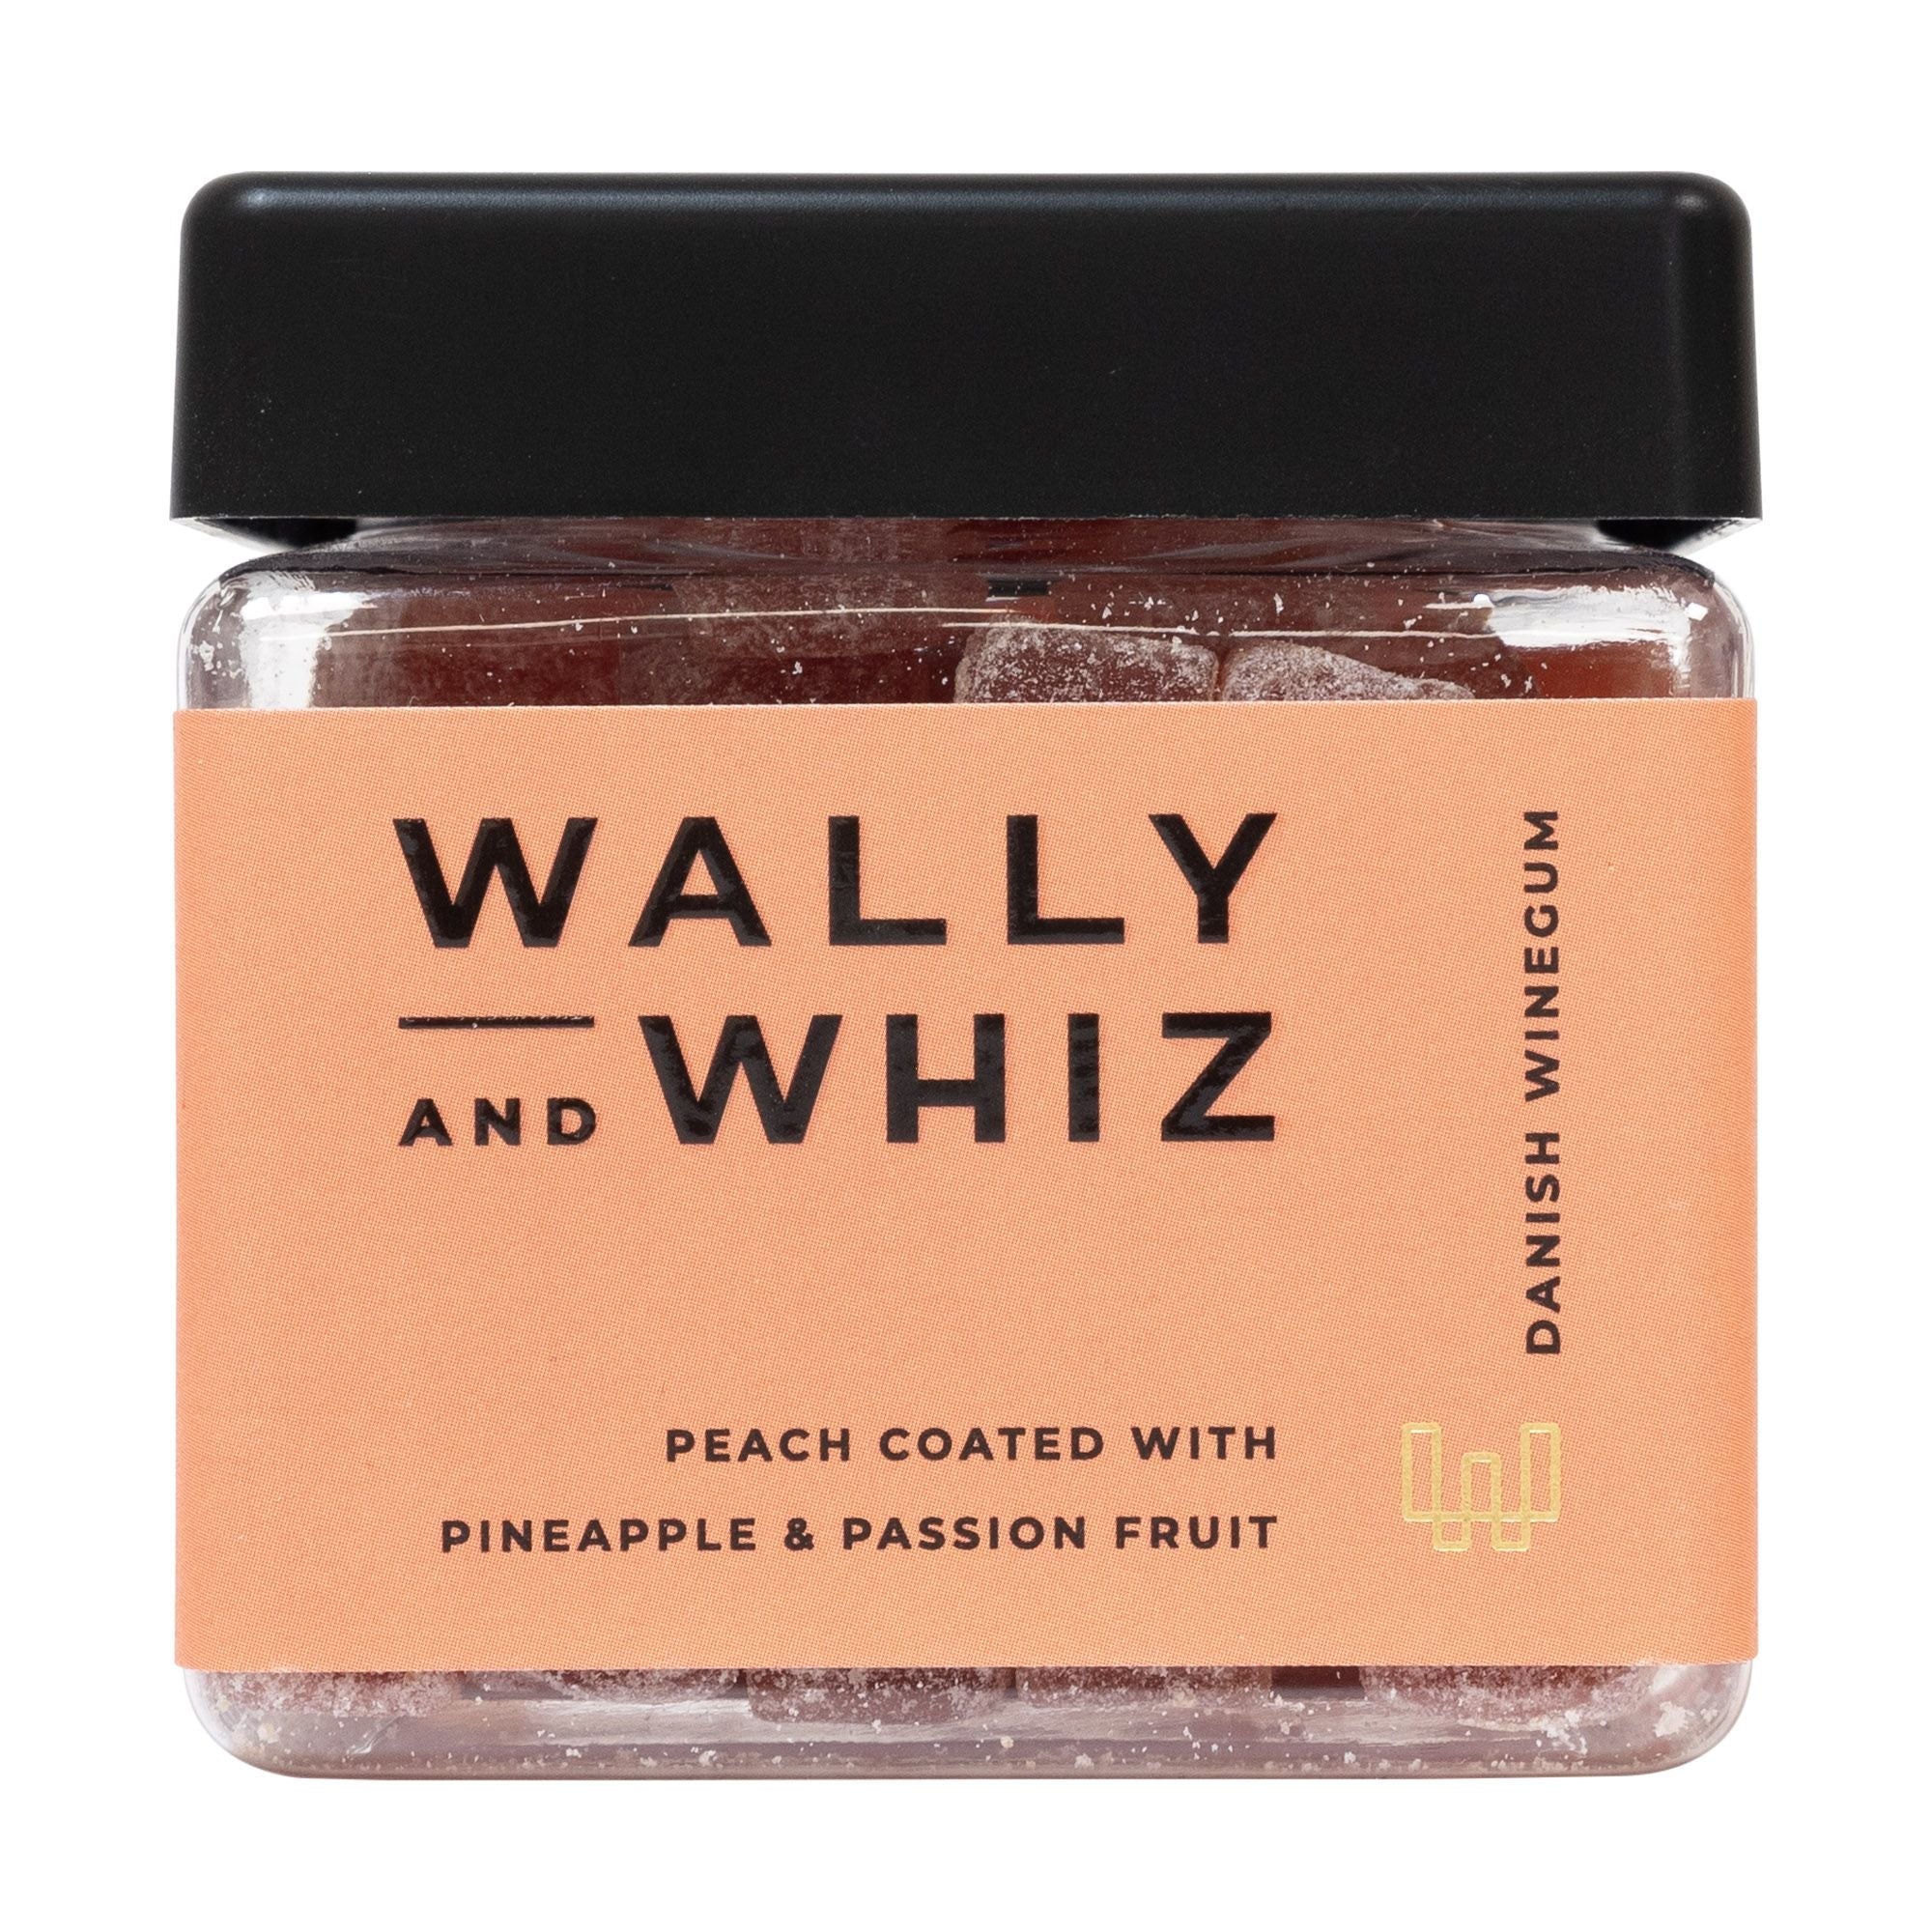 Wally And Whiz Sommarvinnummikub, persika med ananas och passionsfrukt, 140 g